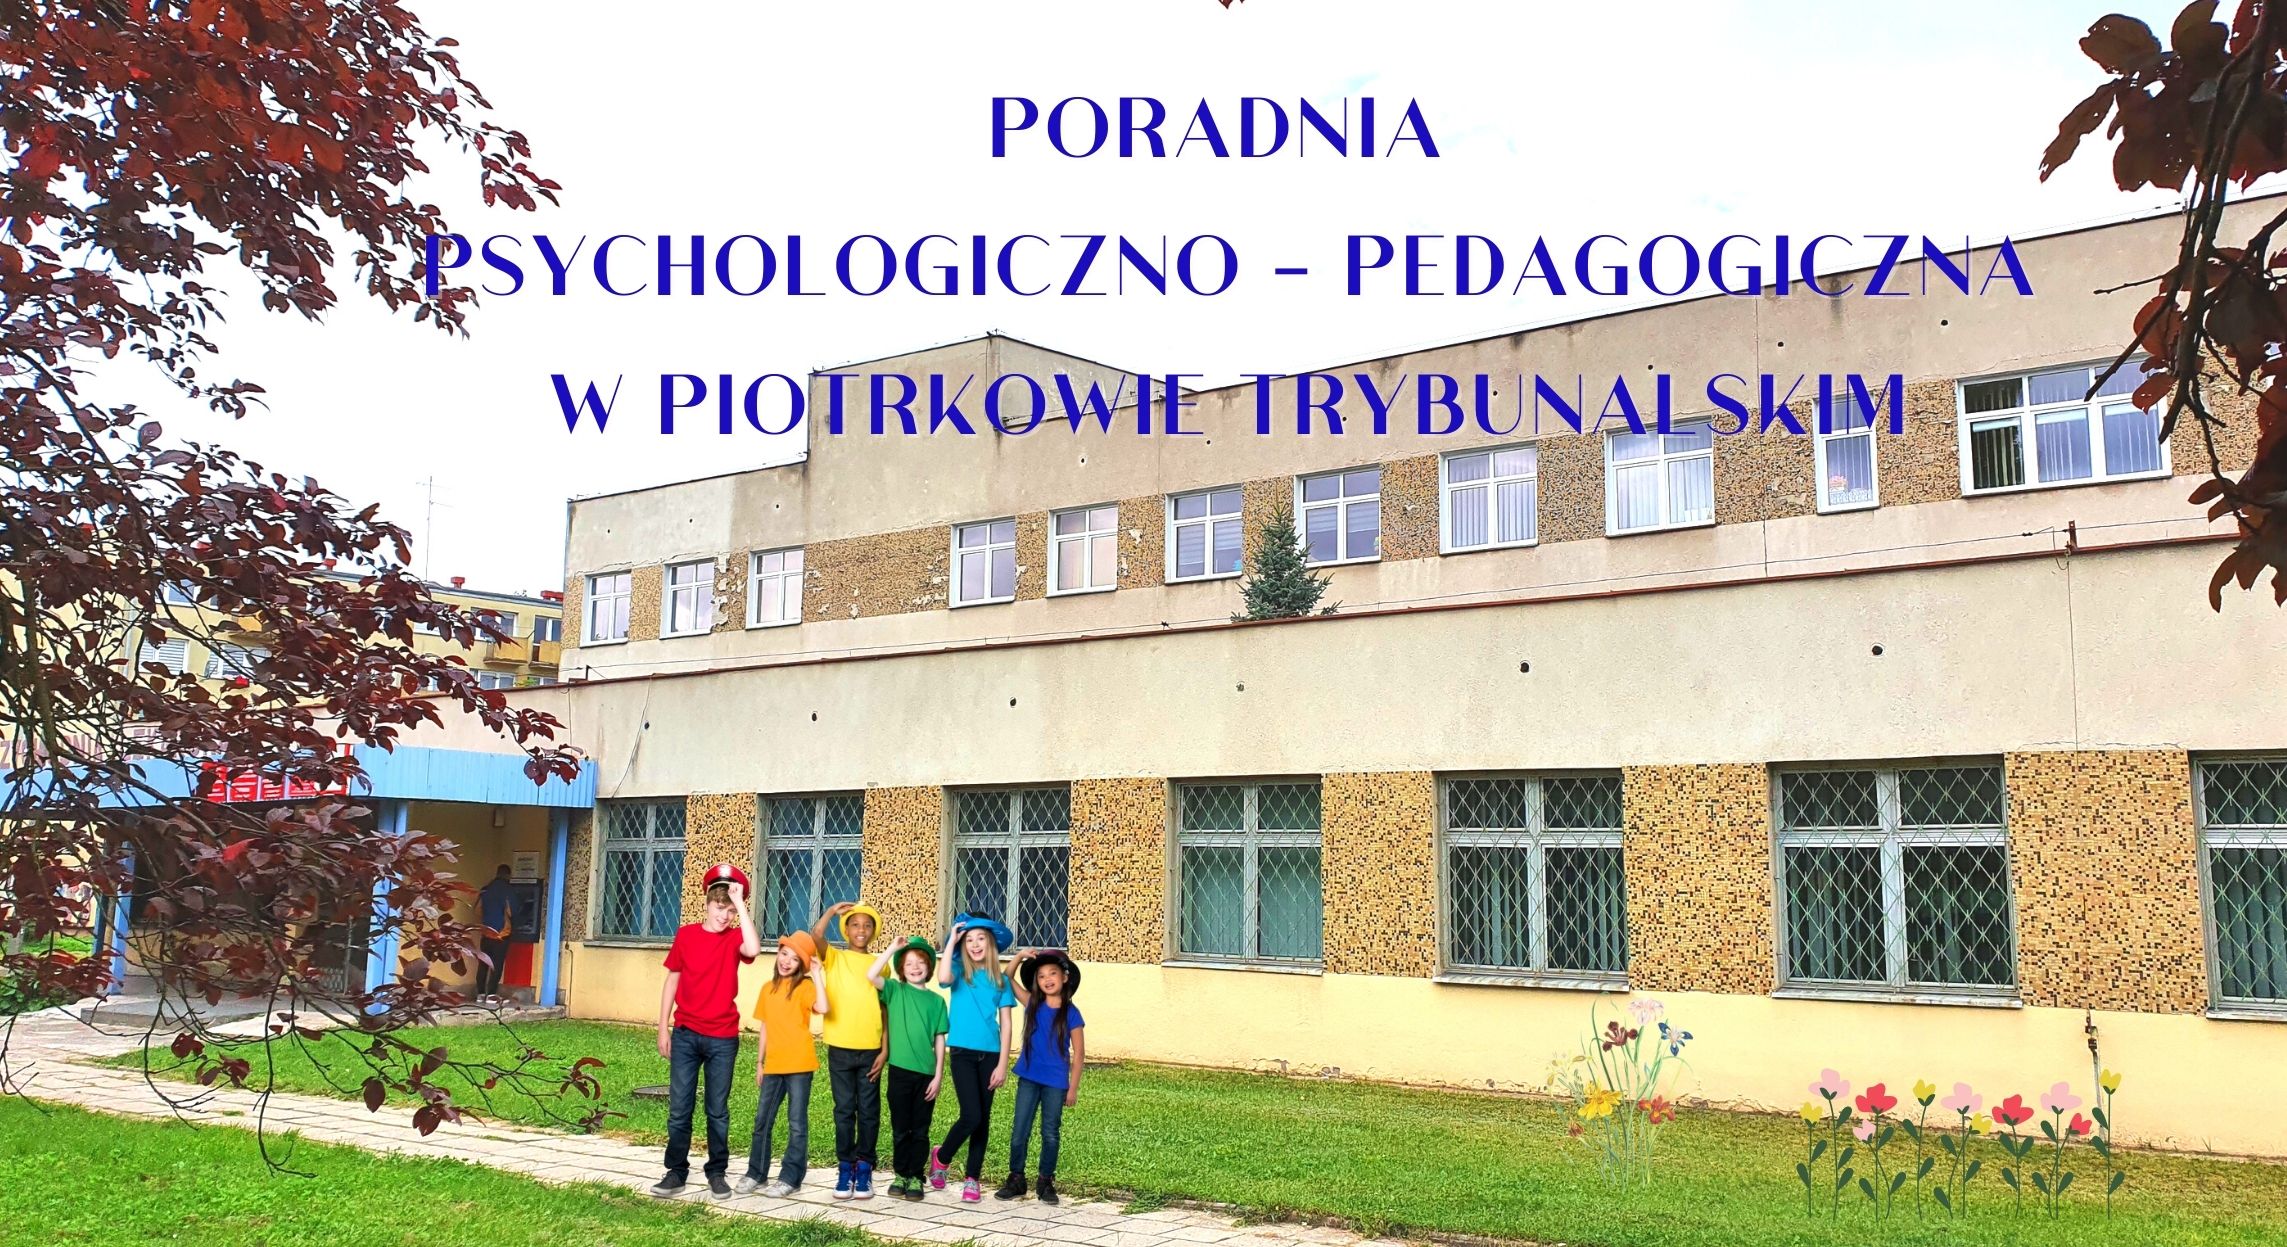 Zdjęcie budynku i napis Poradnia Psychologiczno-Pedagogiczna w Piotrkowie Trybunalskim.